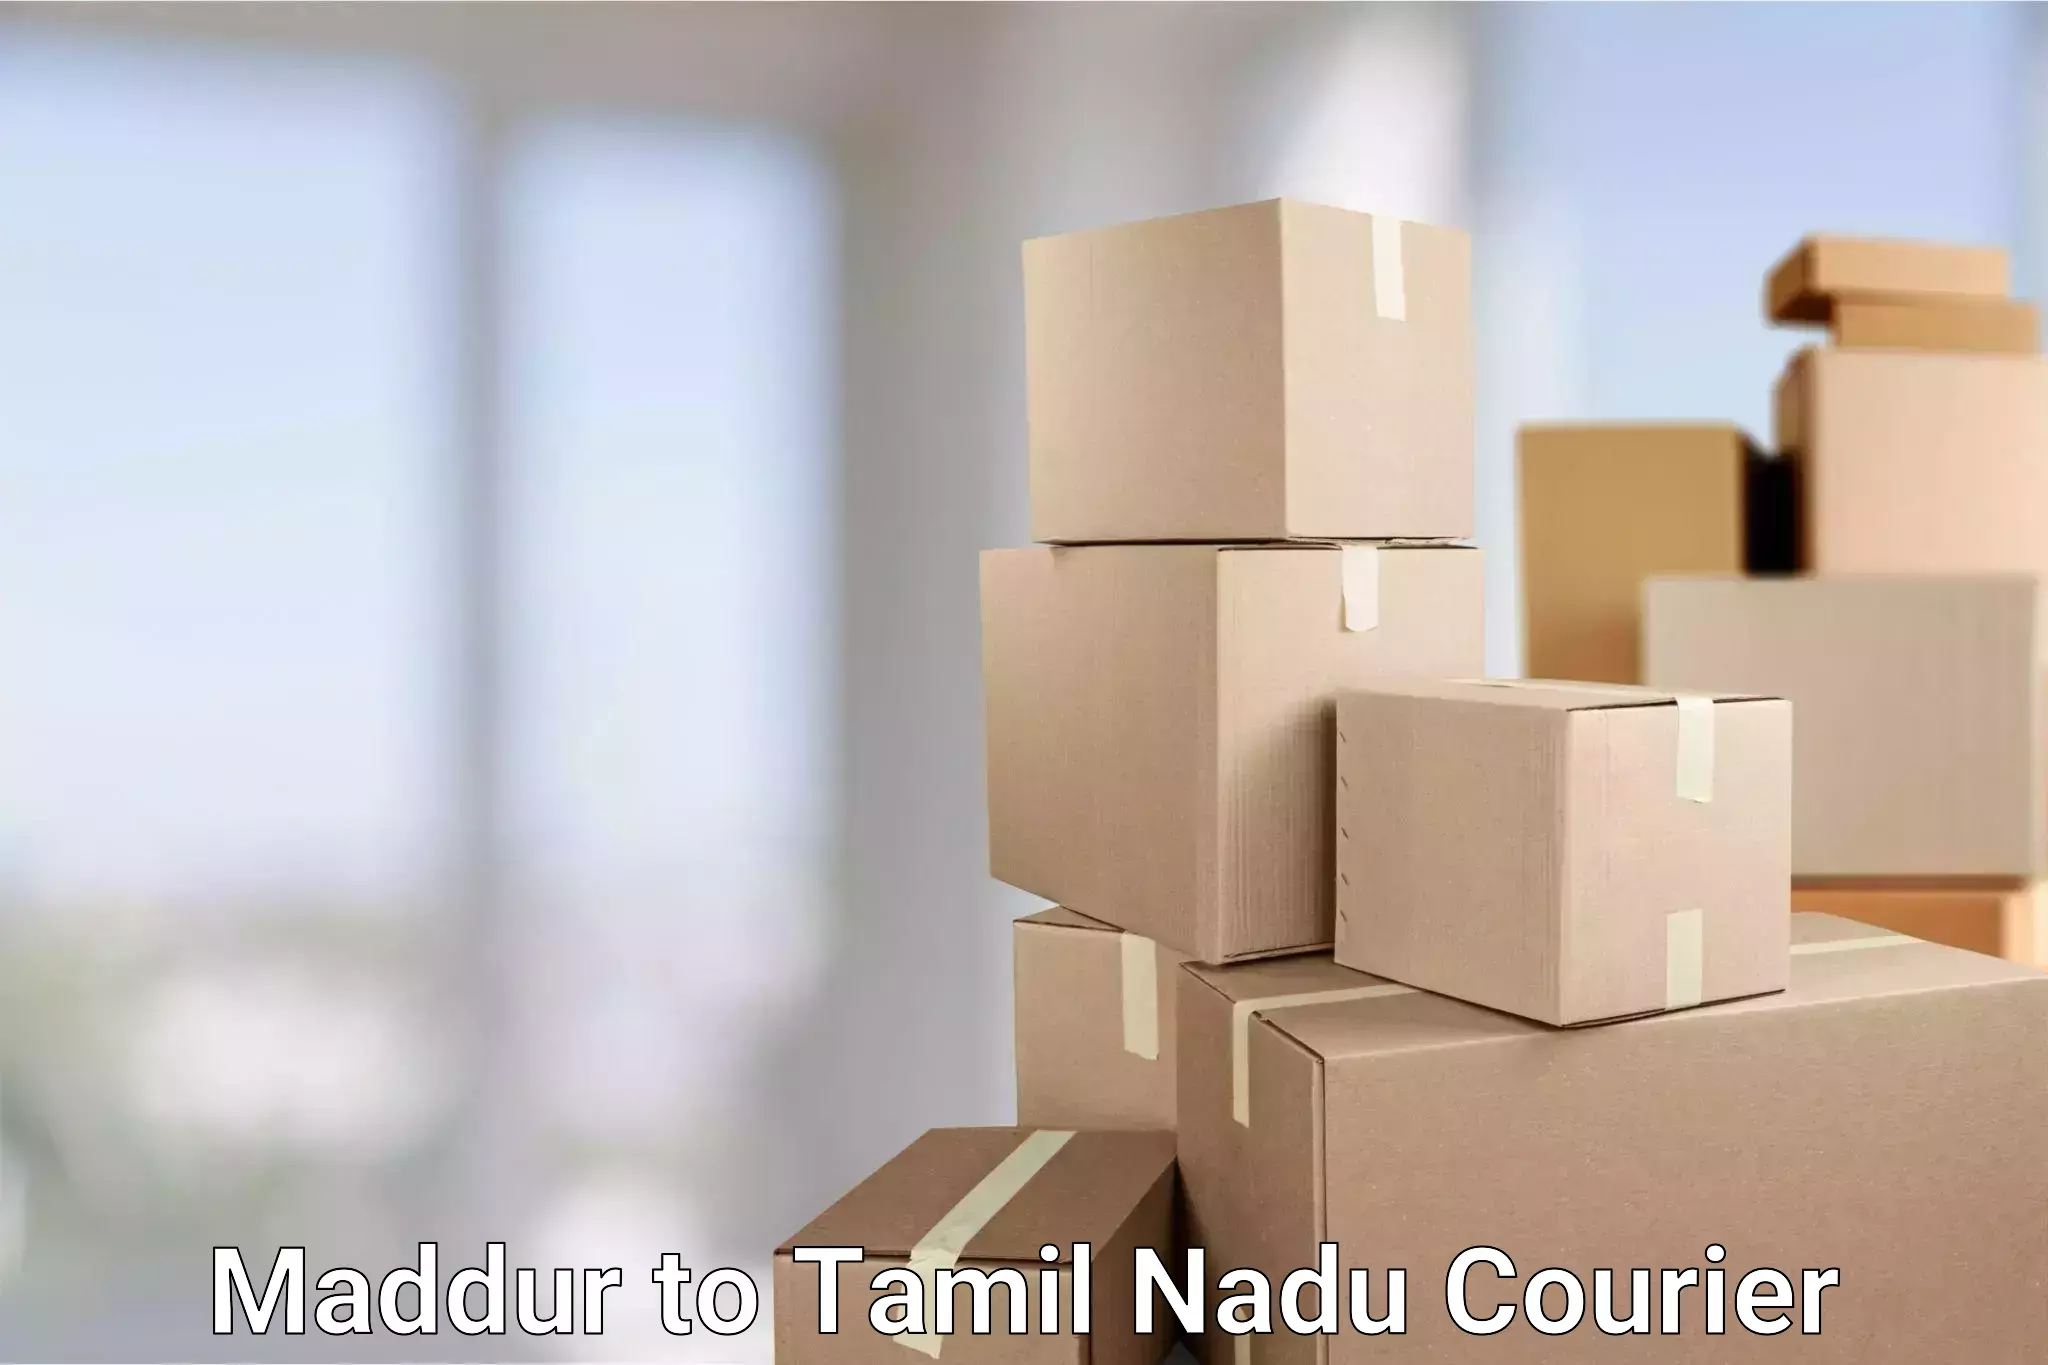 Courier service comparison Maddur to Cuddalore